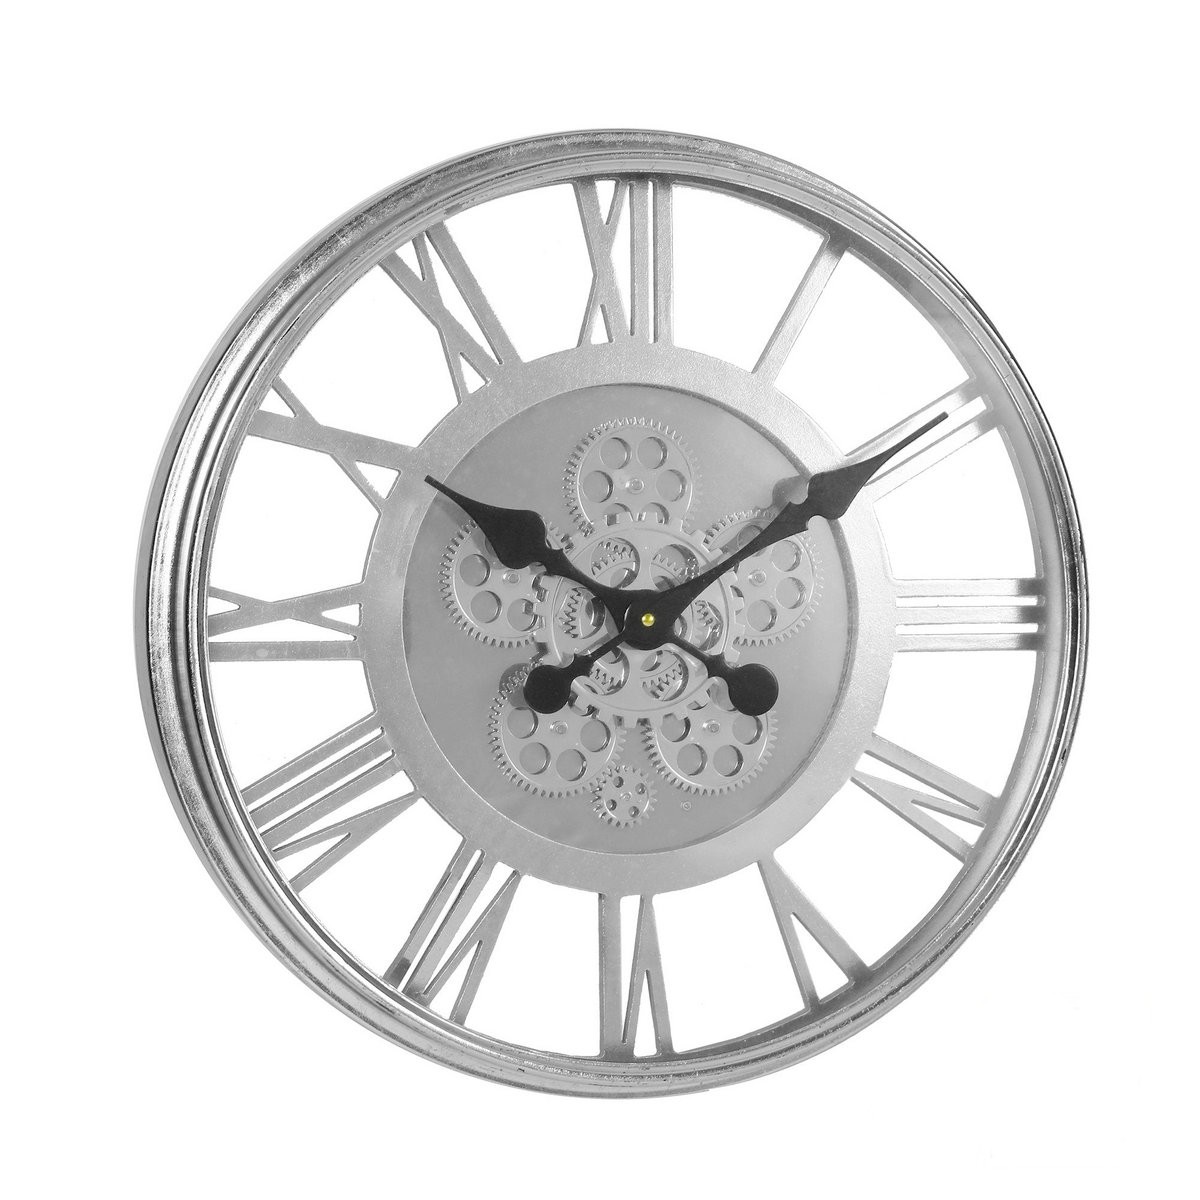 Wanduhr Industrie Victoria Silber 53cm Glas Metall Zahnräder Uhr Industry